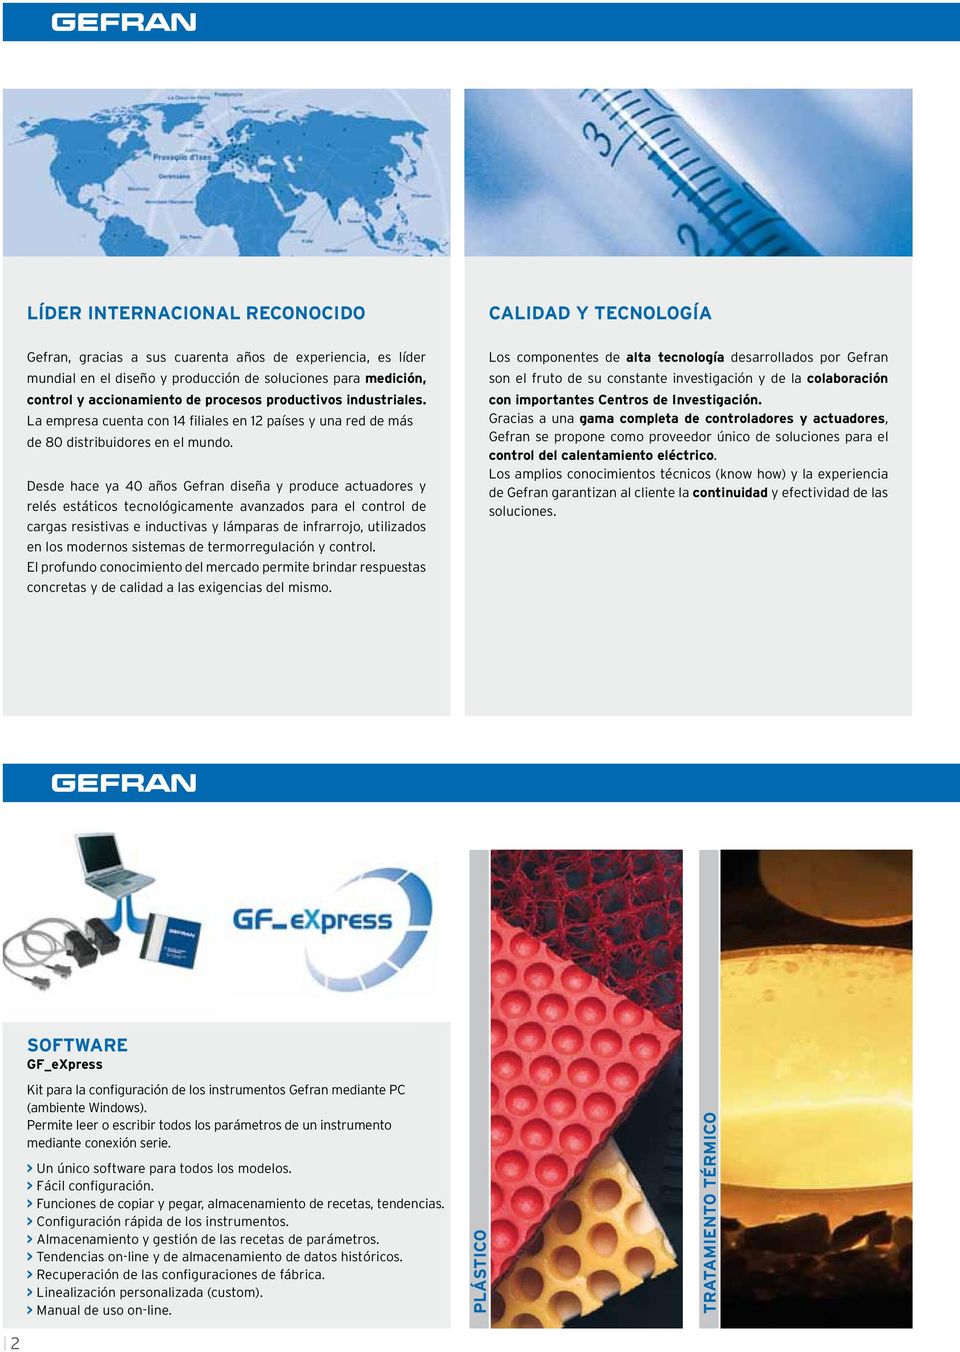 Desde hace ya 40 años Gefran diseña y produce actuadores y relés estáticos tecnológicamente avanzados para el control de cargas resistivas e inductivas y lámparas de infrarrojo, utilizados en los